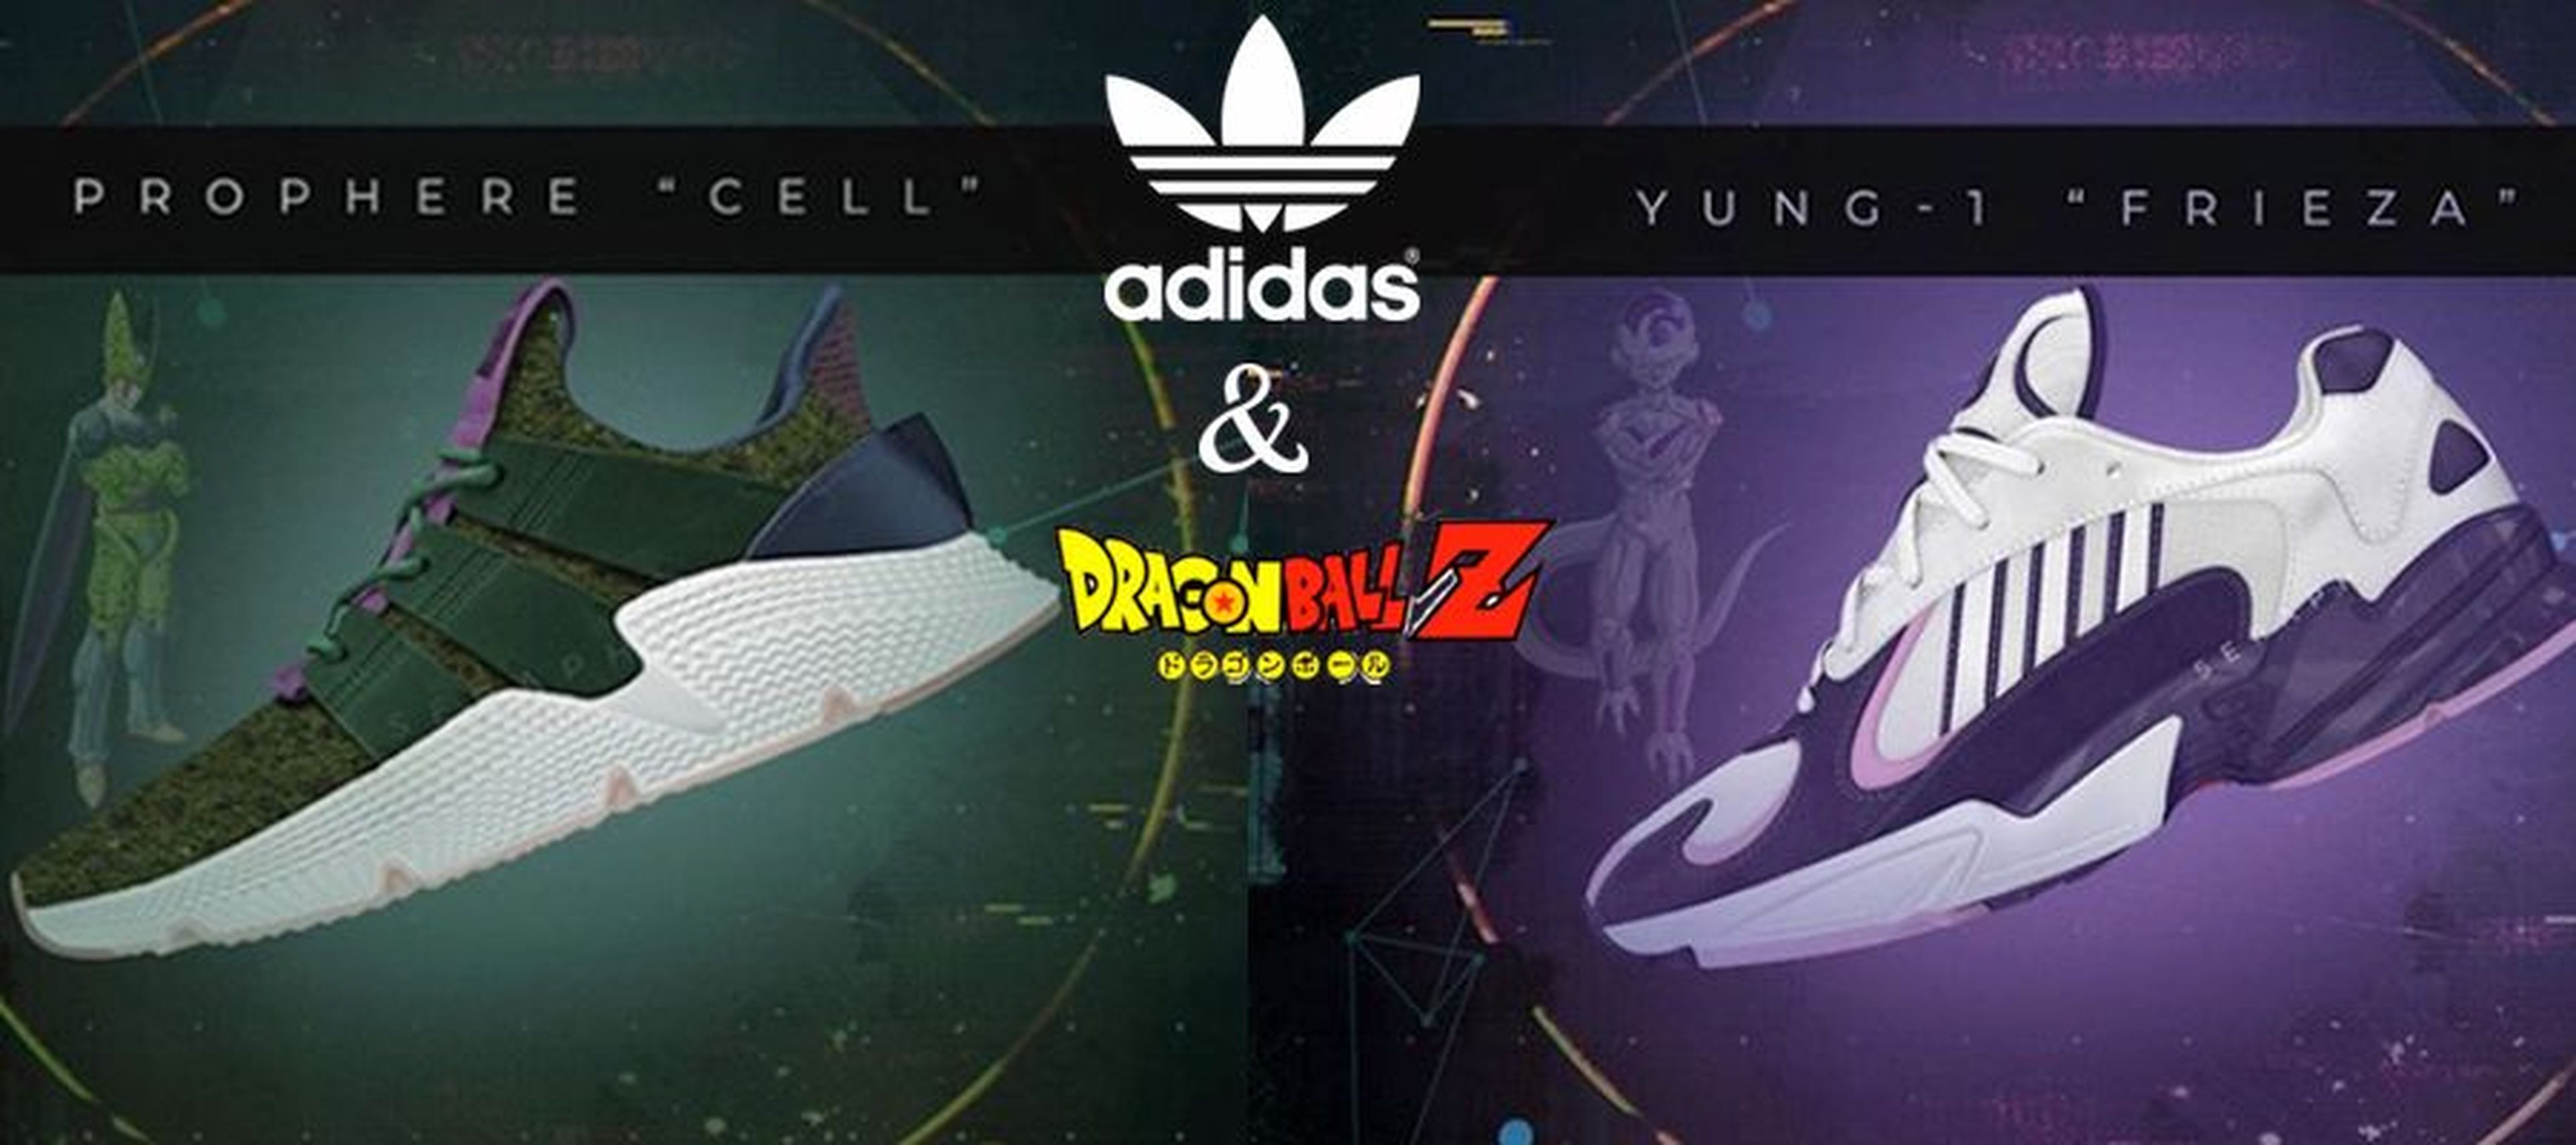 Dragon Ball Z - Adidas lanzará las zapatillas oficiales de la serie Hobby Consolas